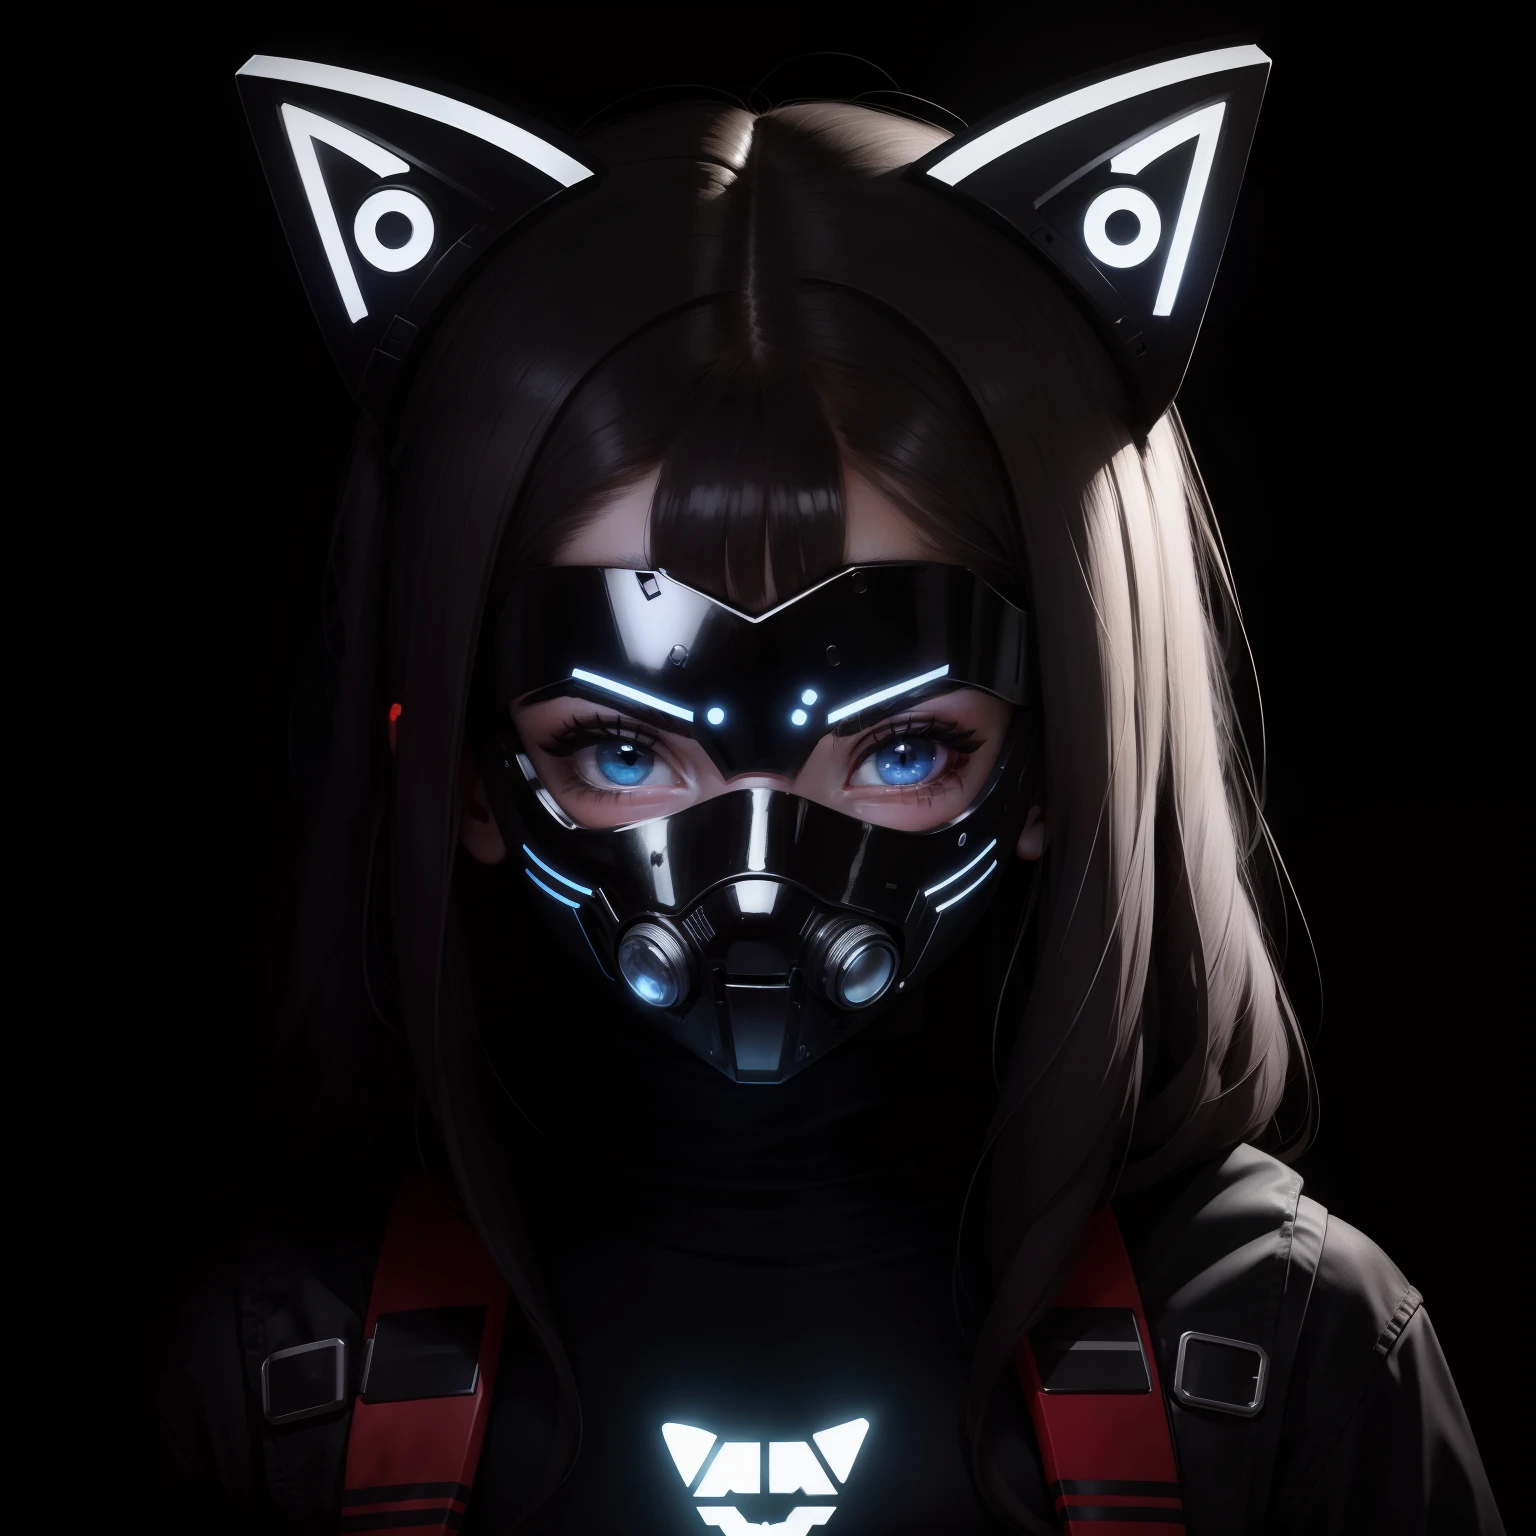 PFP 標誌的字符是一個戴著控制論 LED 面具遮住臉的女孩, 面罩上的 LED 燈形成一隻貓